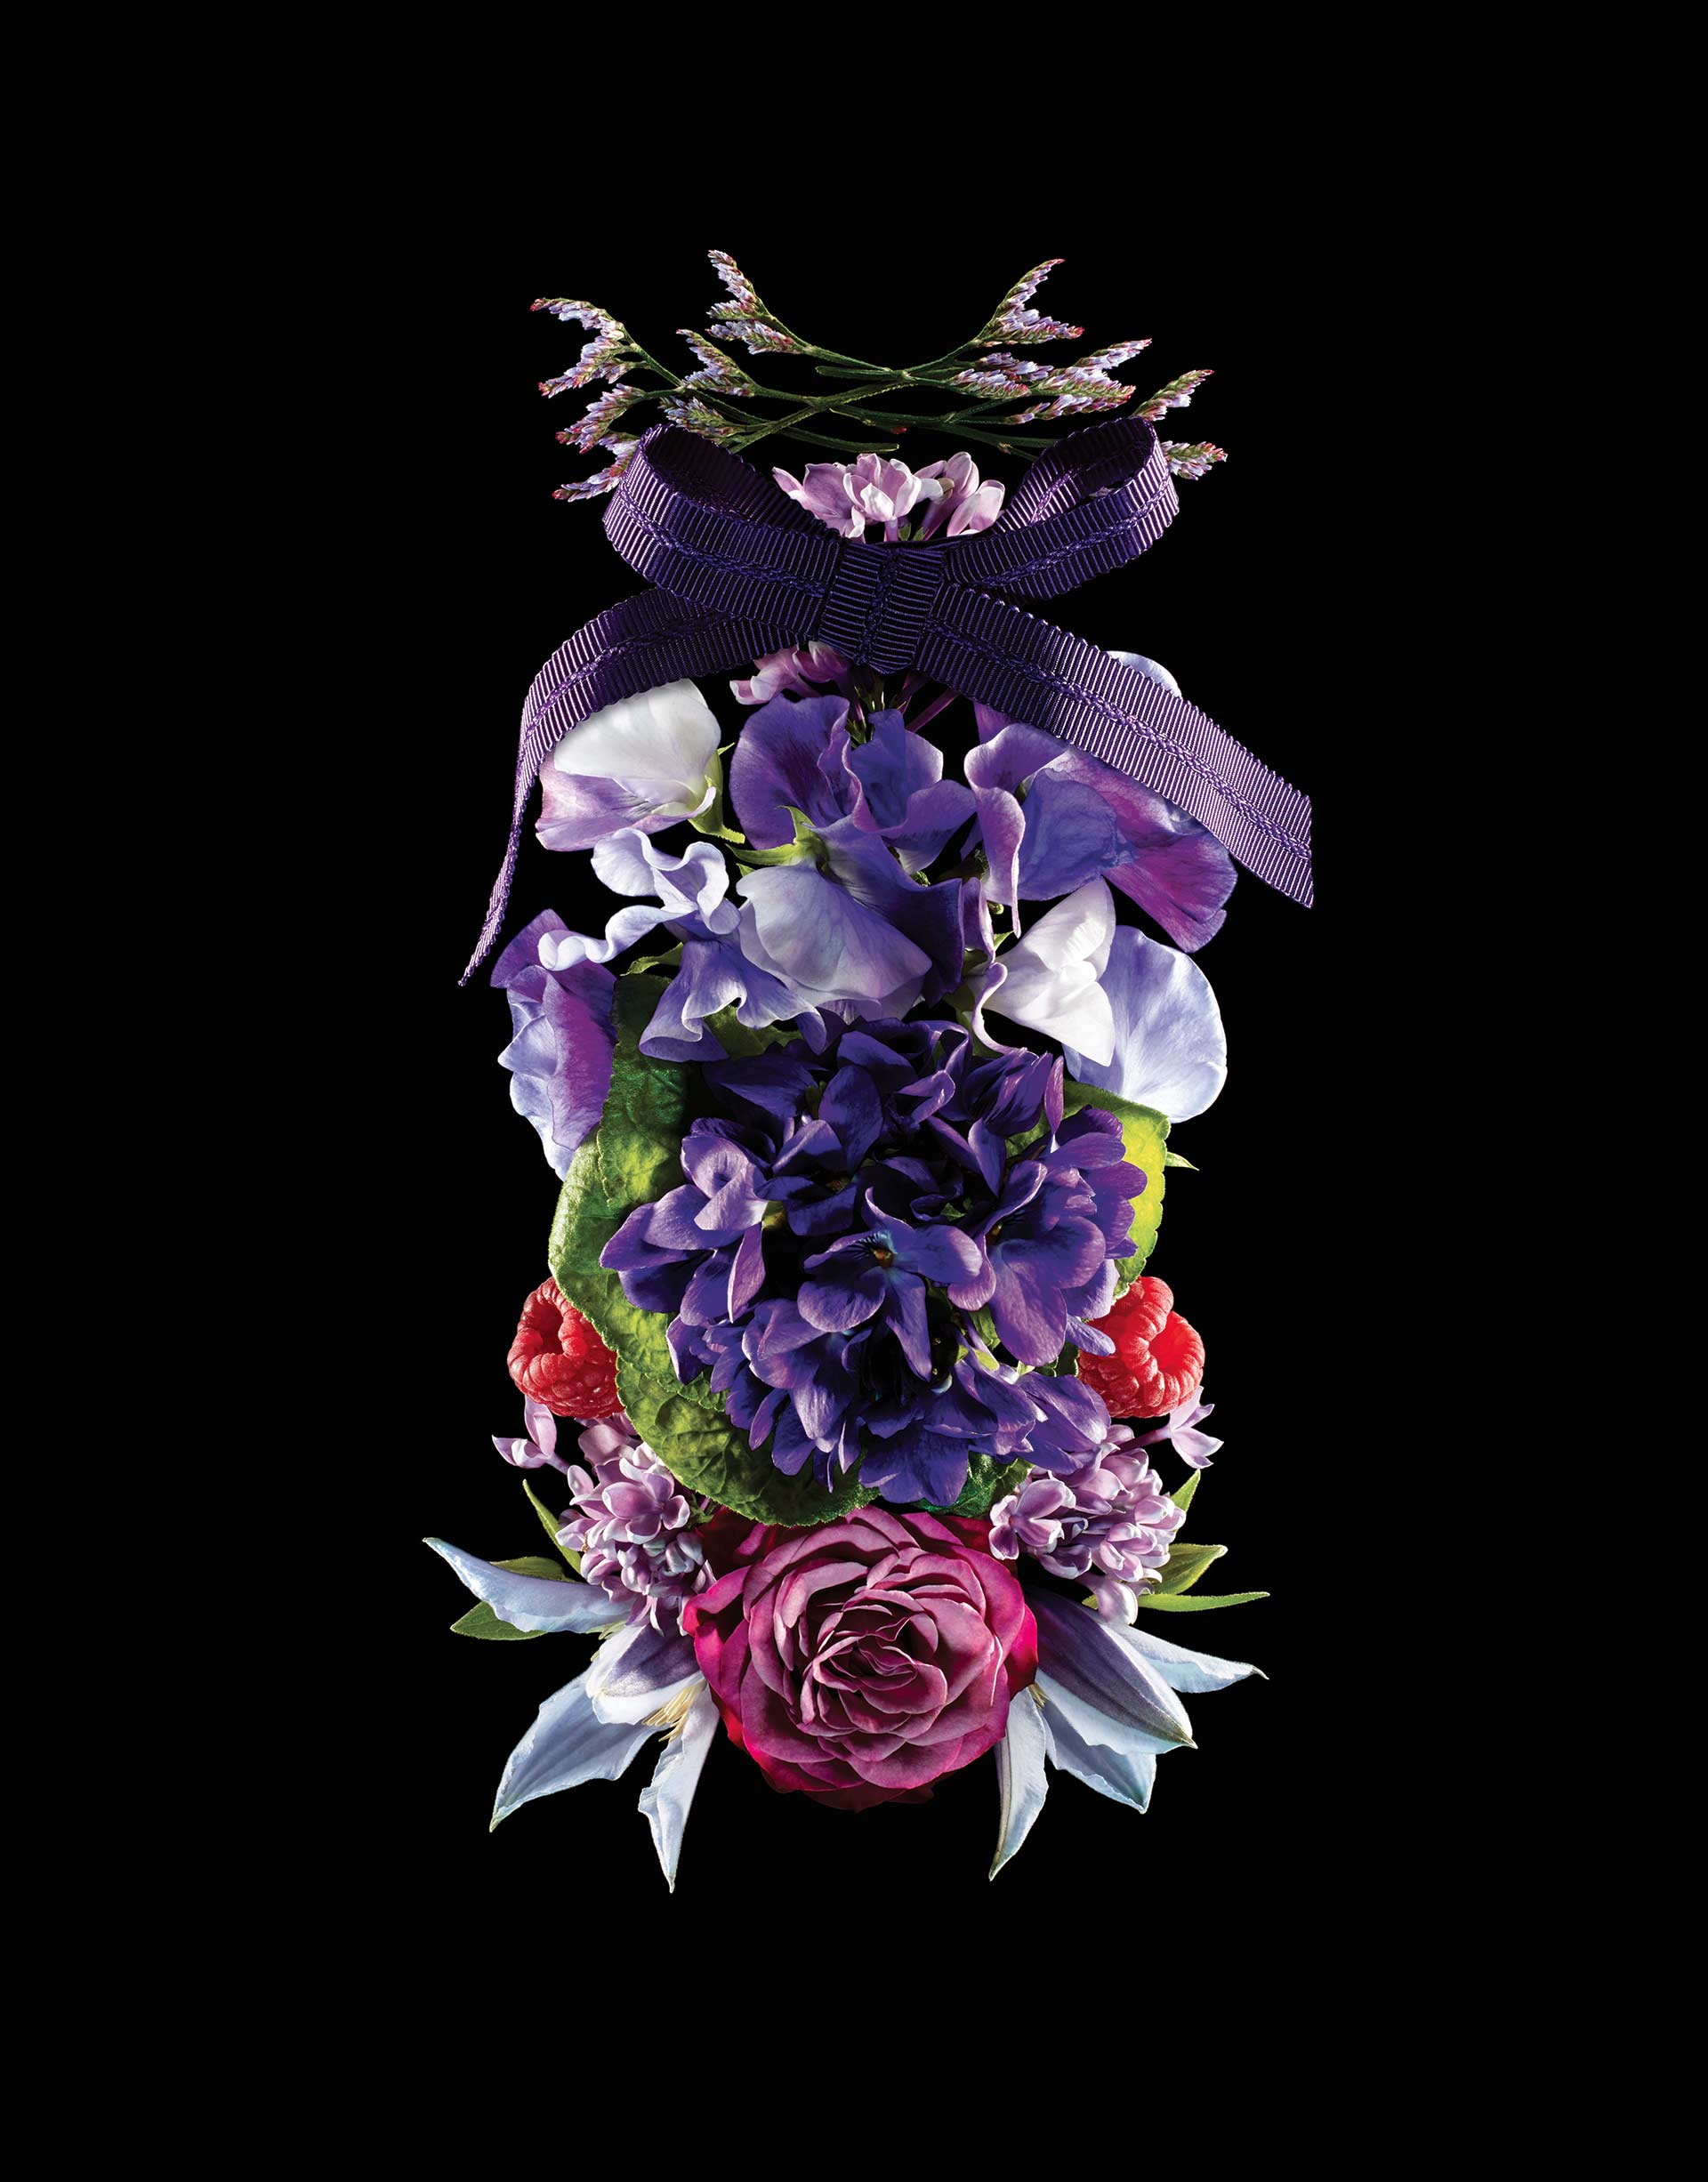 8helmut-stelzenberger-luxury-flowers-112117- (4).jpg